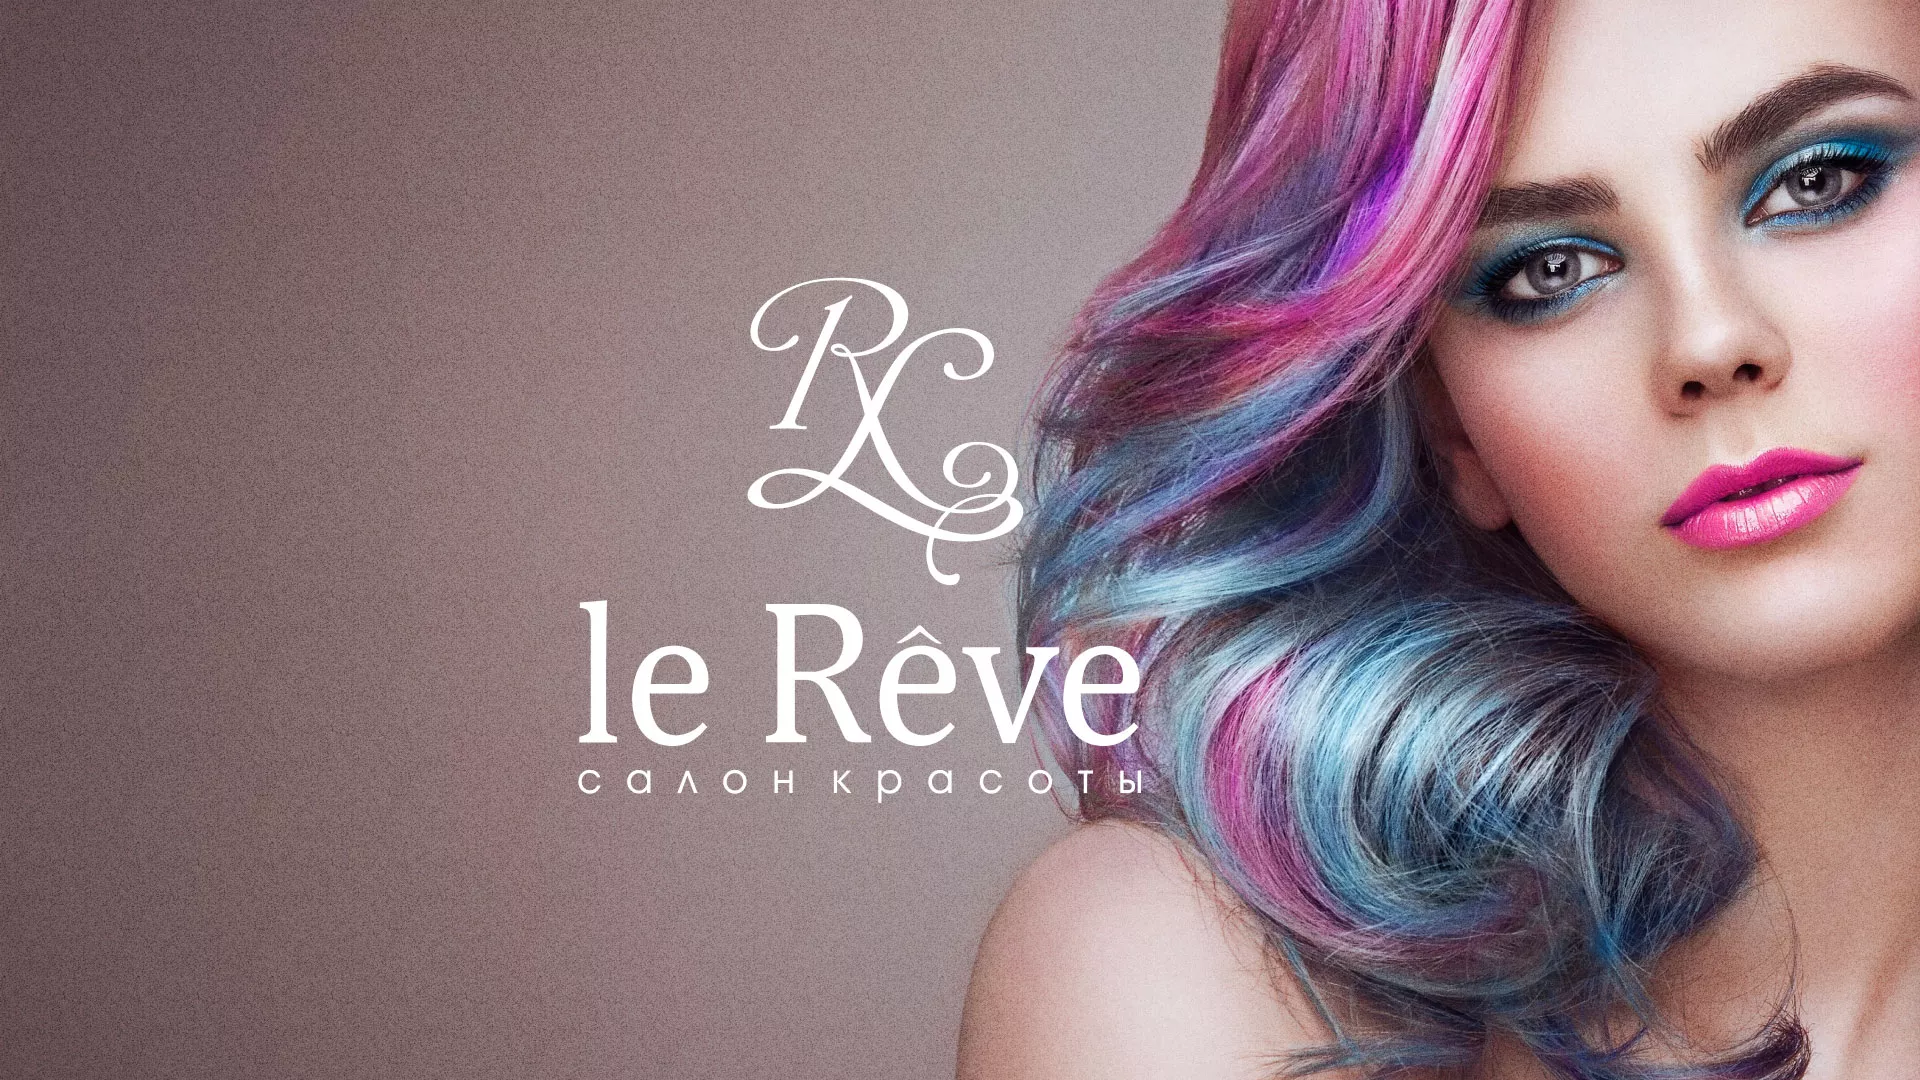 Создание сайта для салона красоты «Le Reve» в Элисте